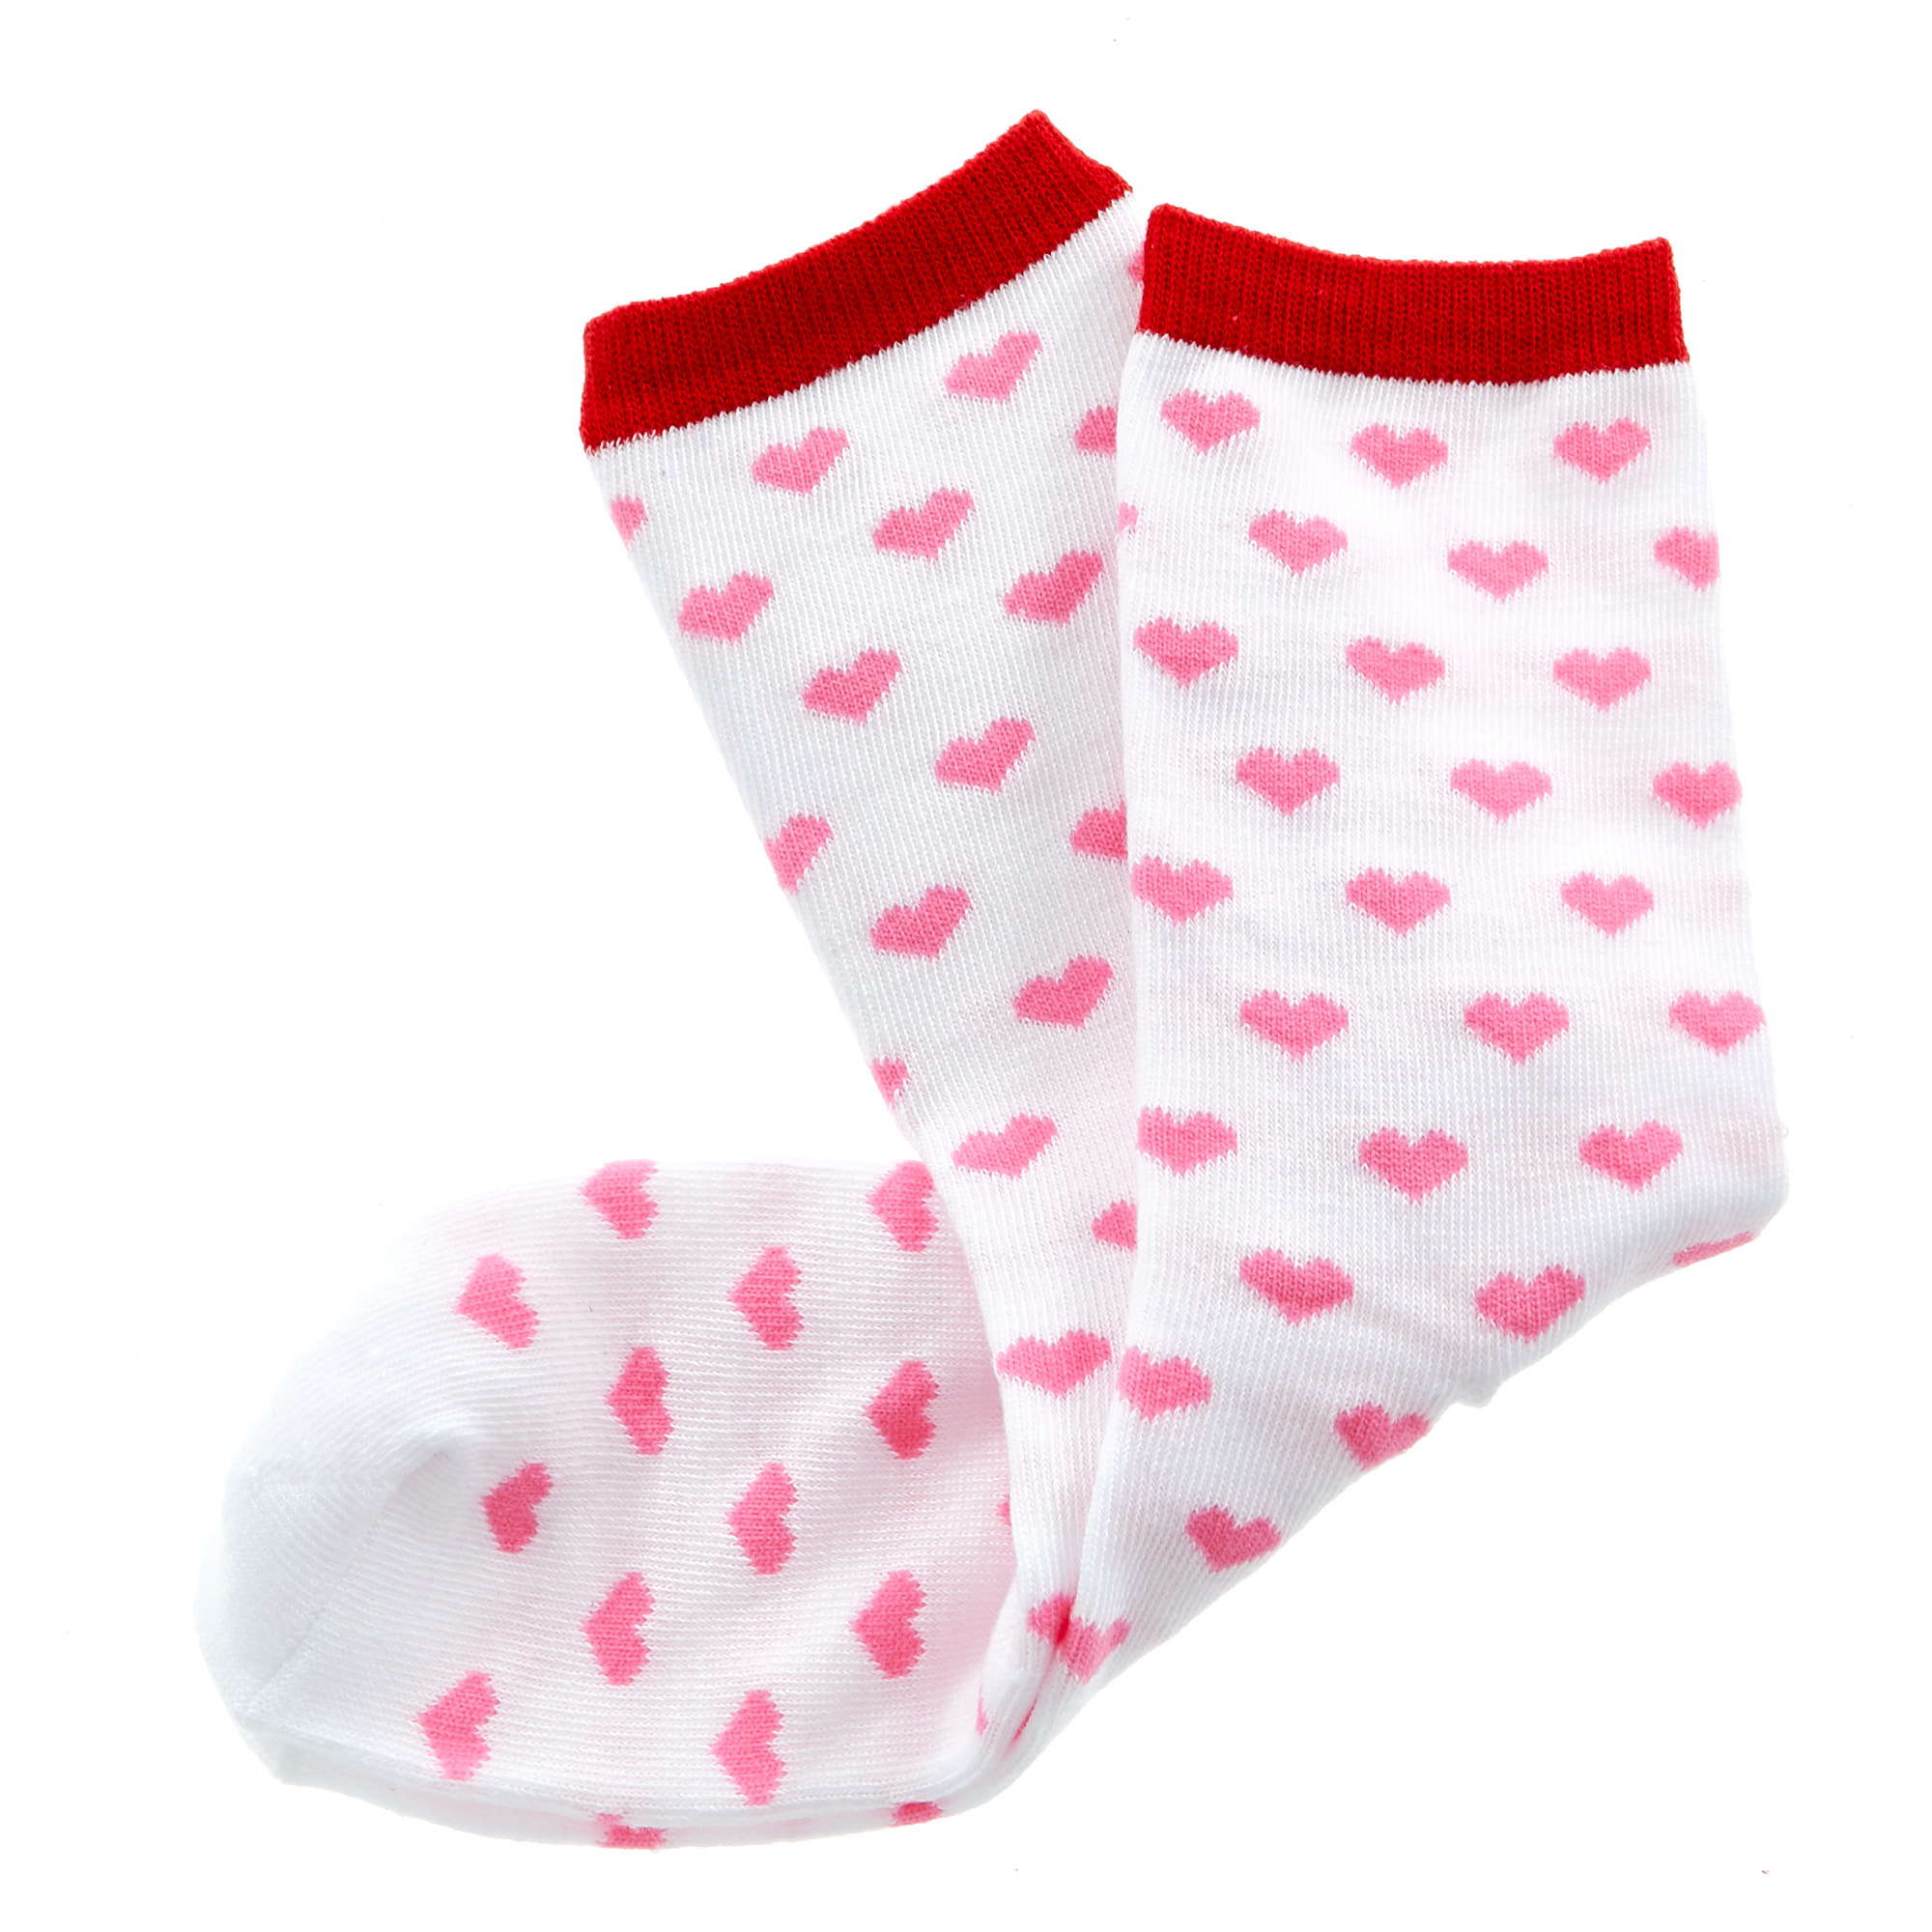 Buy Love Bites Novelty Pink Heart Socks for GBP 1.49 | Card Factory UK